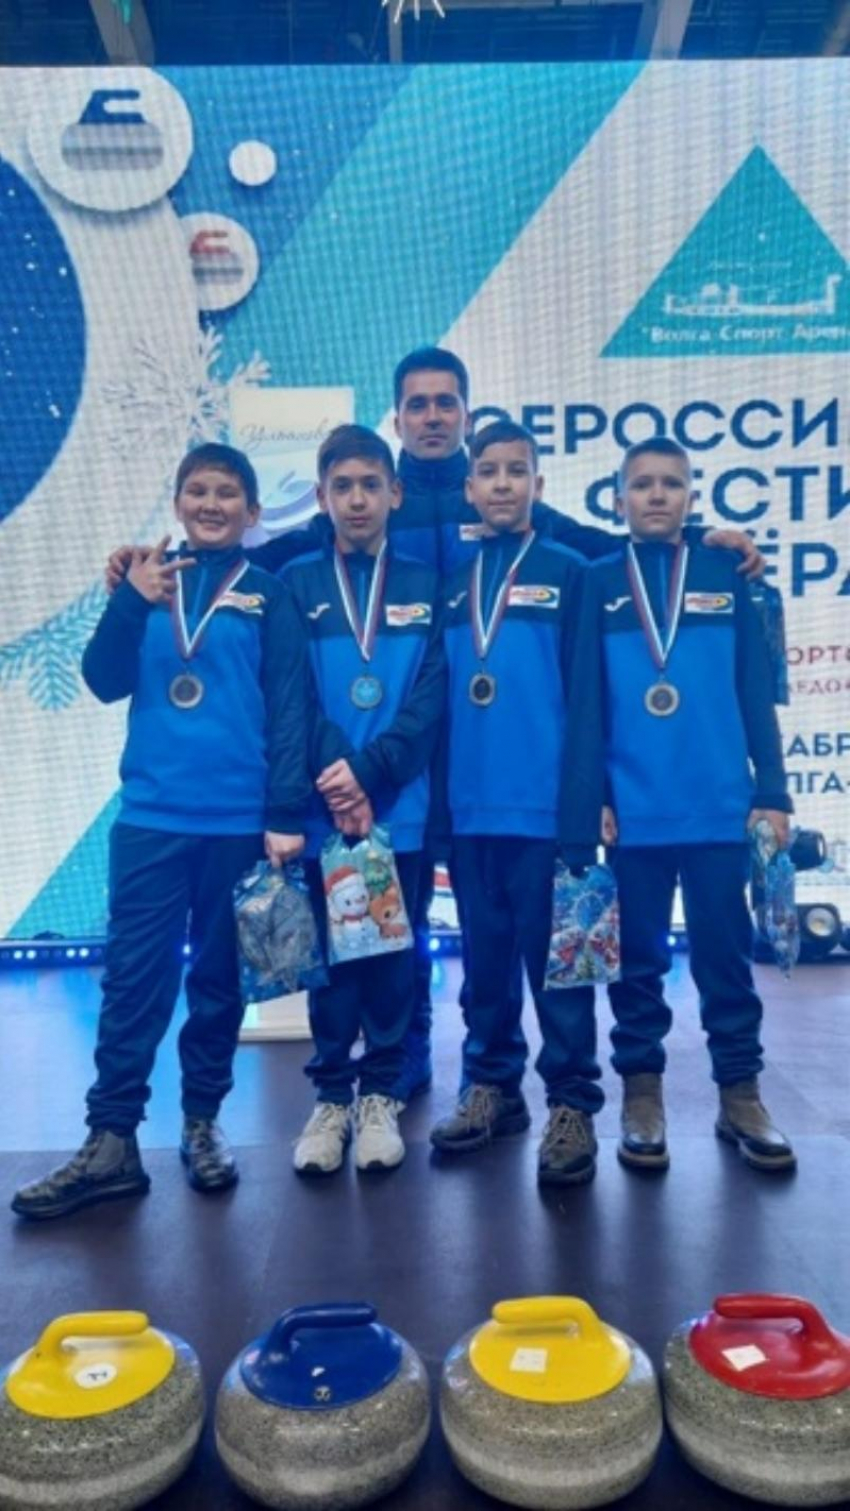 Команда из Таганрога завоевала серебро на фестивале по керлингу